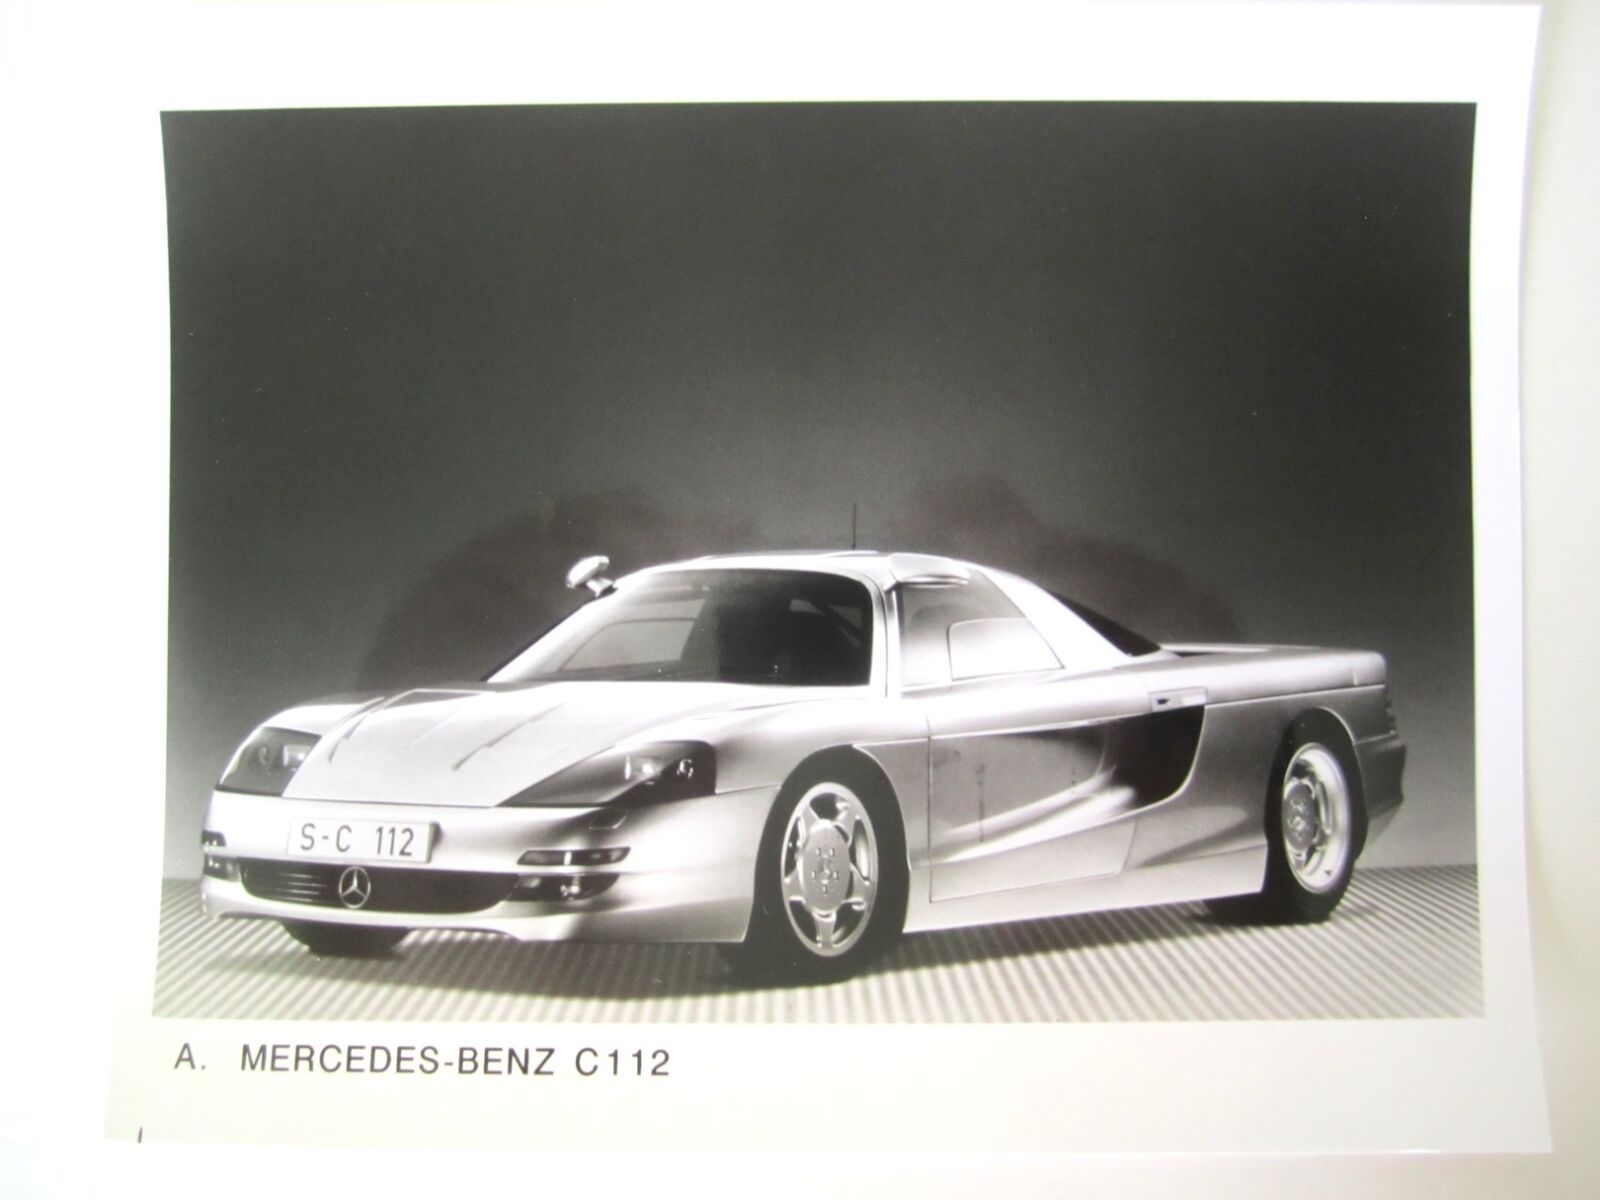 MERCEDES-BENZ C112 CONCEPT CAR PRESS PHOTO